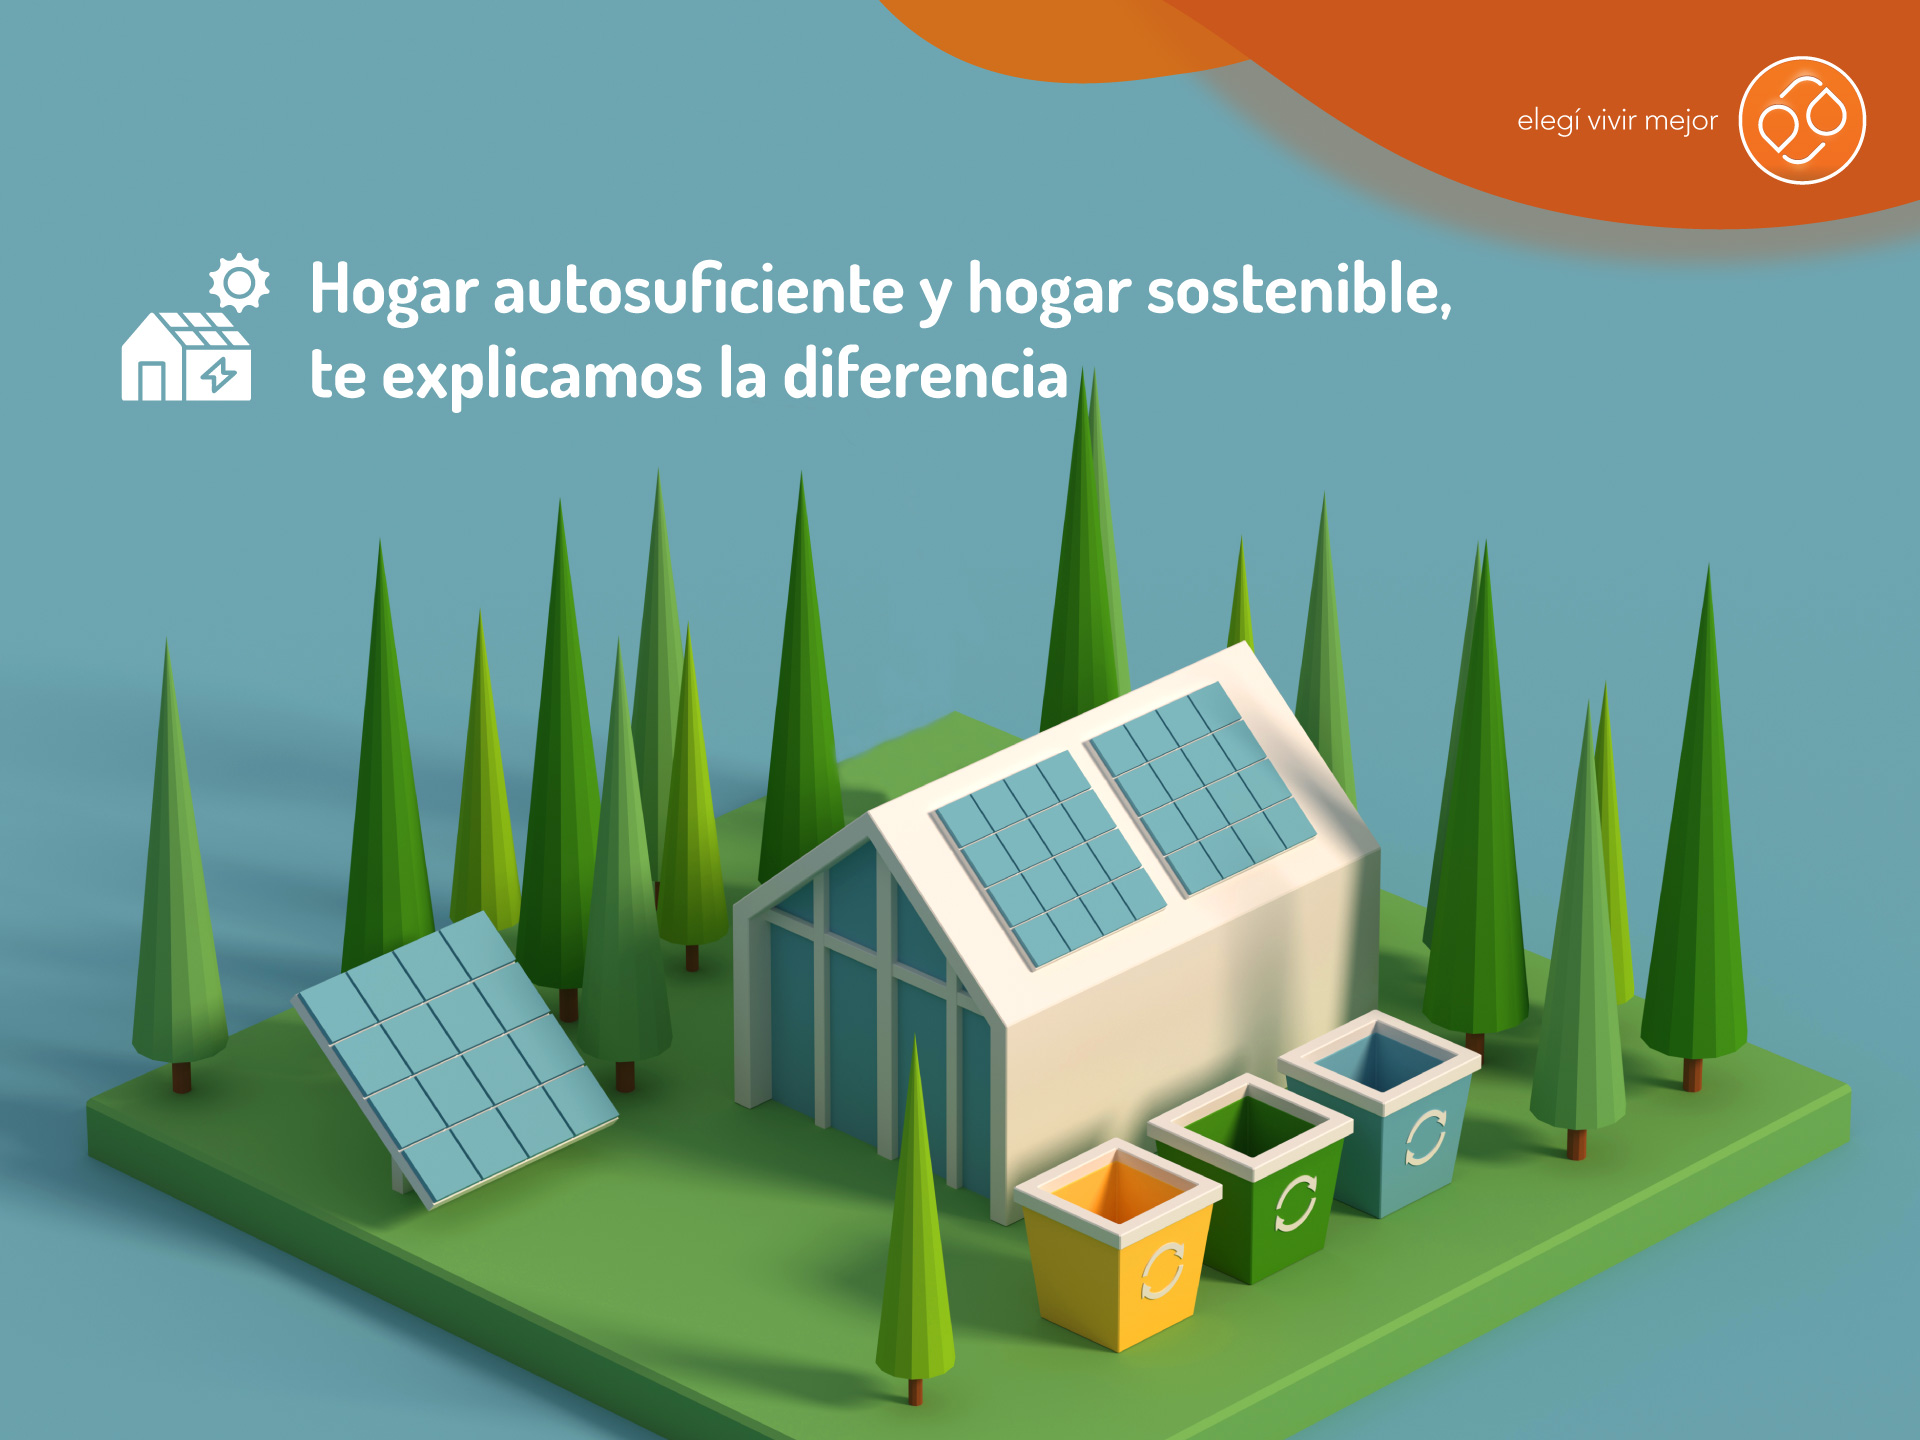 Cooler: ¿Qué significa y cómo contribuye a la sostenibilidad en los hogares?